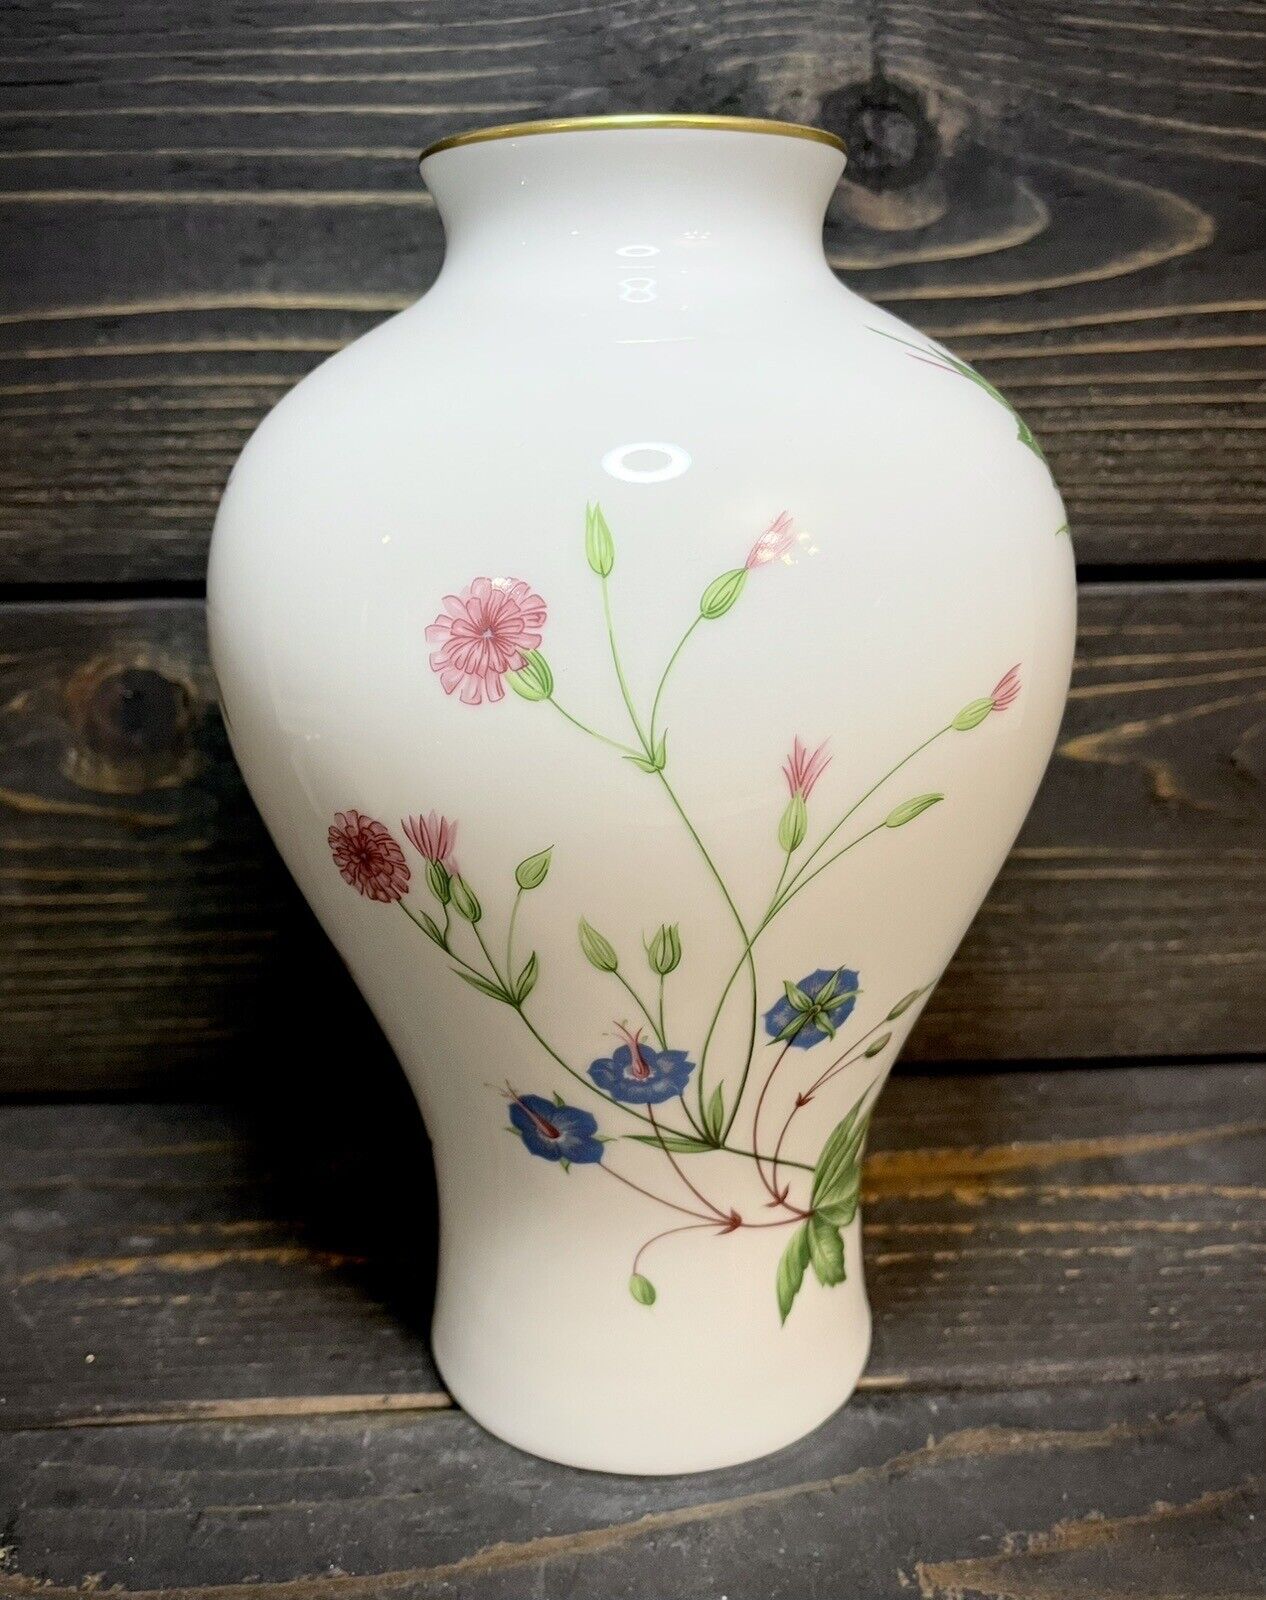 Haviland Limoges France For The Danbury Mint Vase 8 3/4” Tall Floral Vines